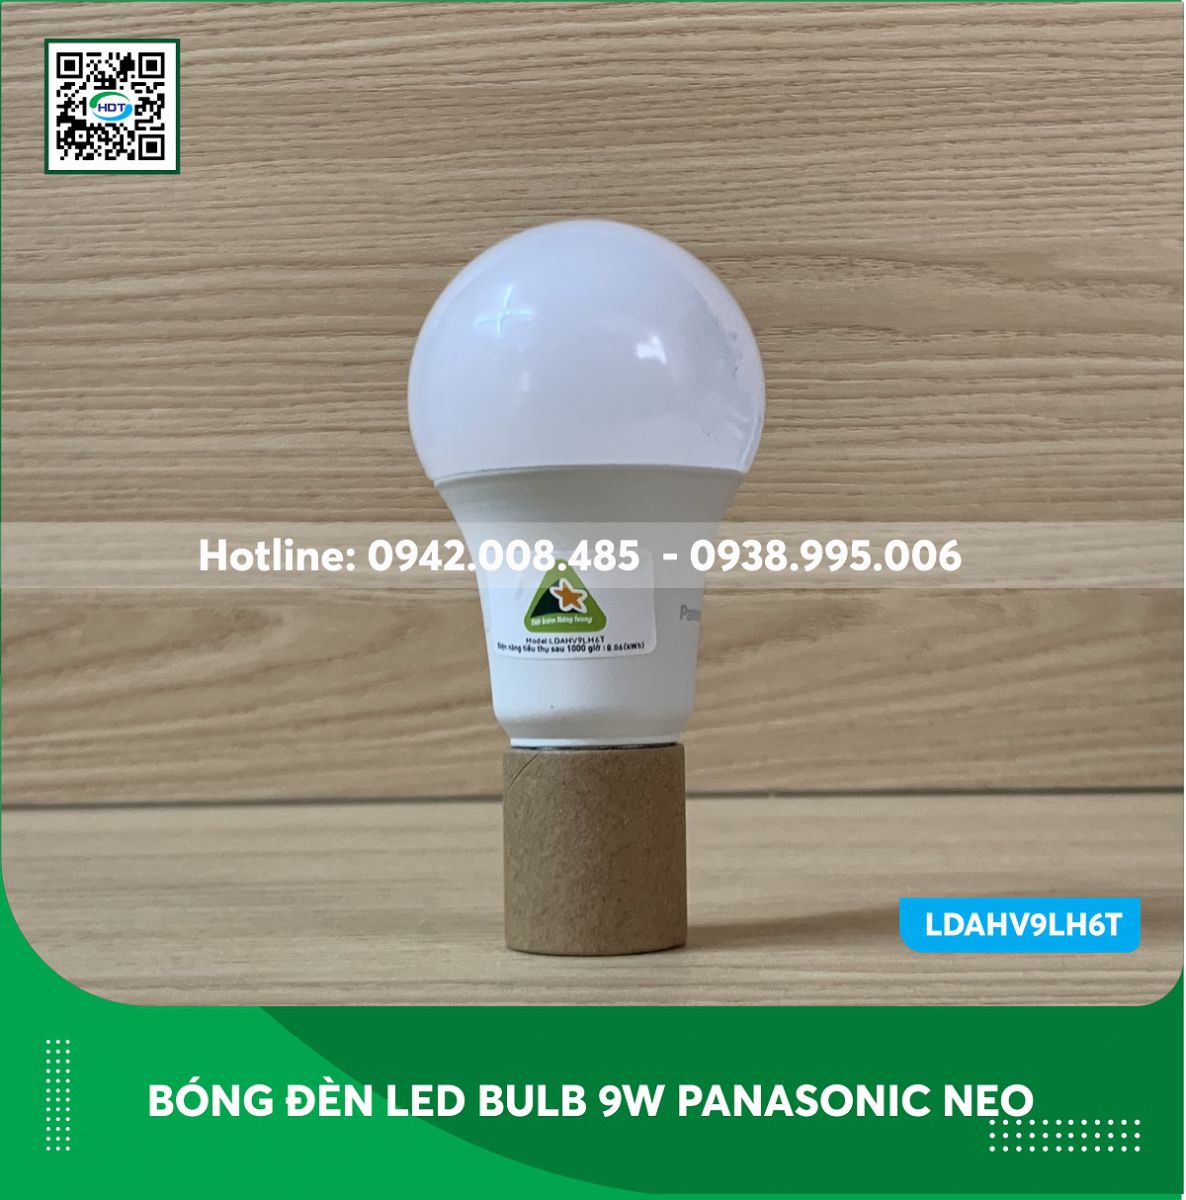 Bóng đèn led bulb 9w Panasonic Neo